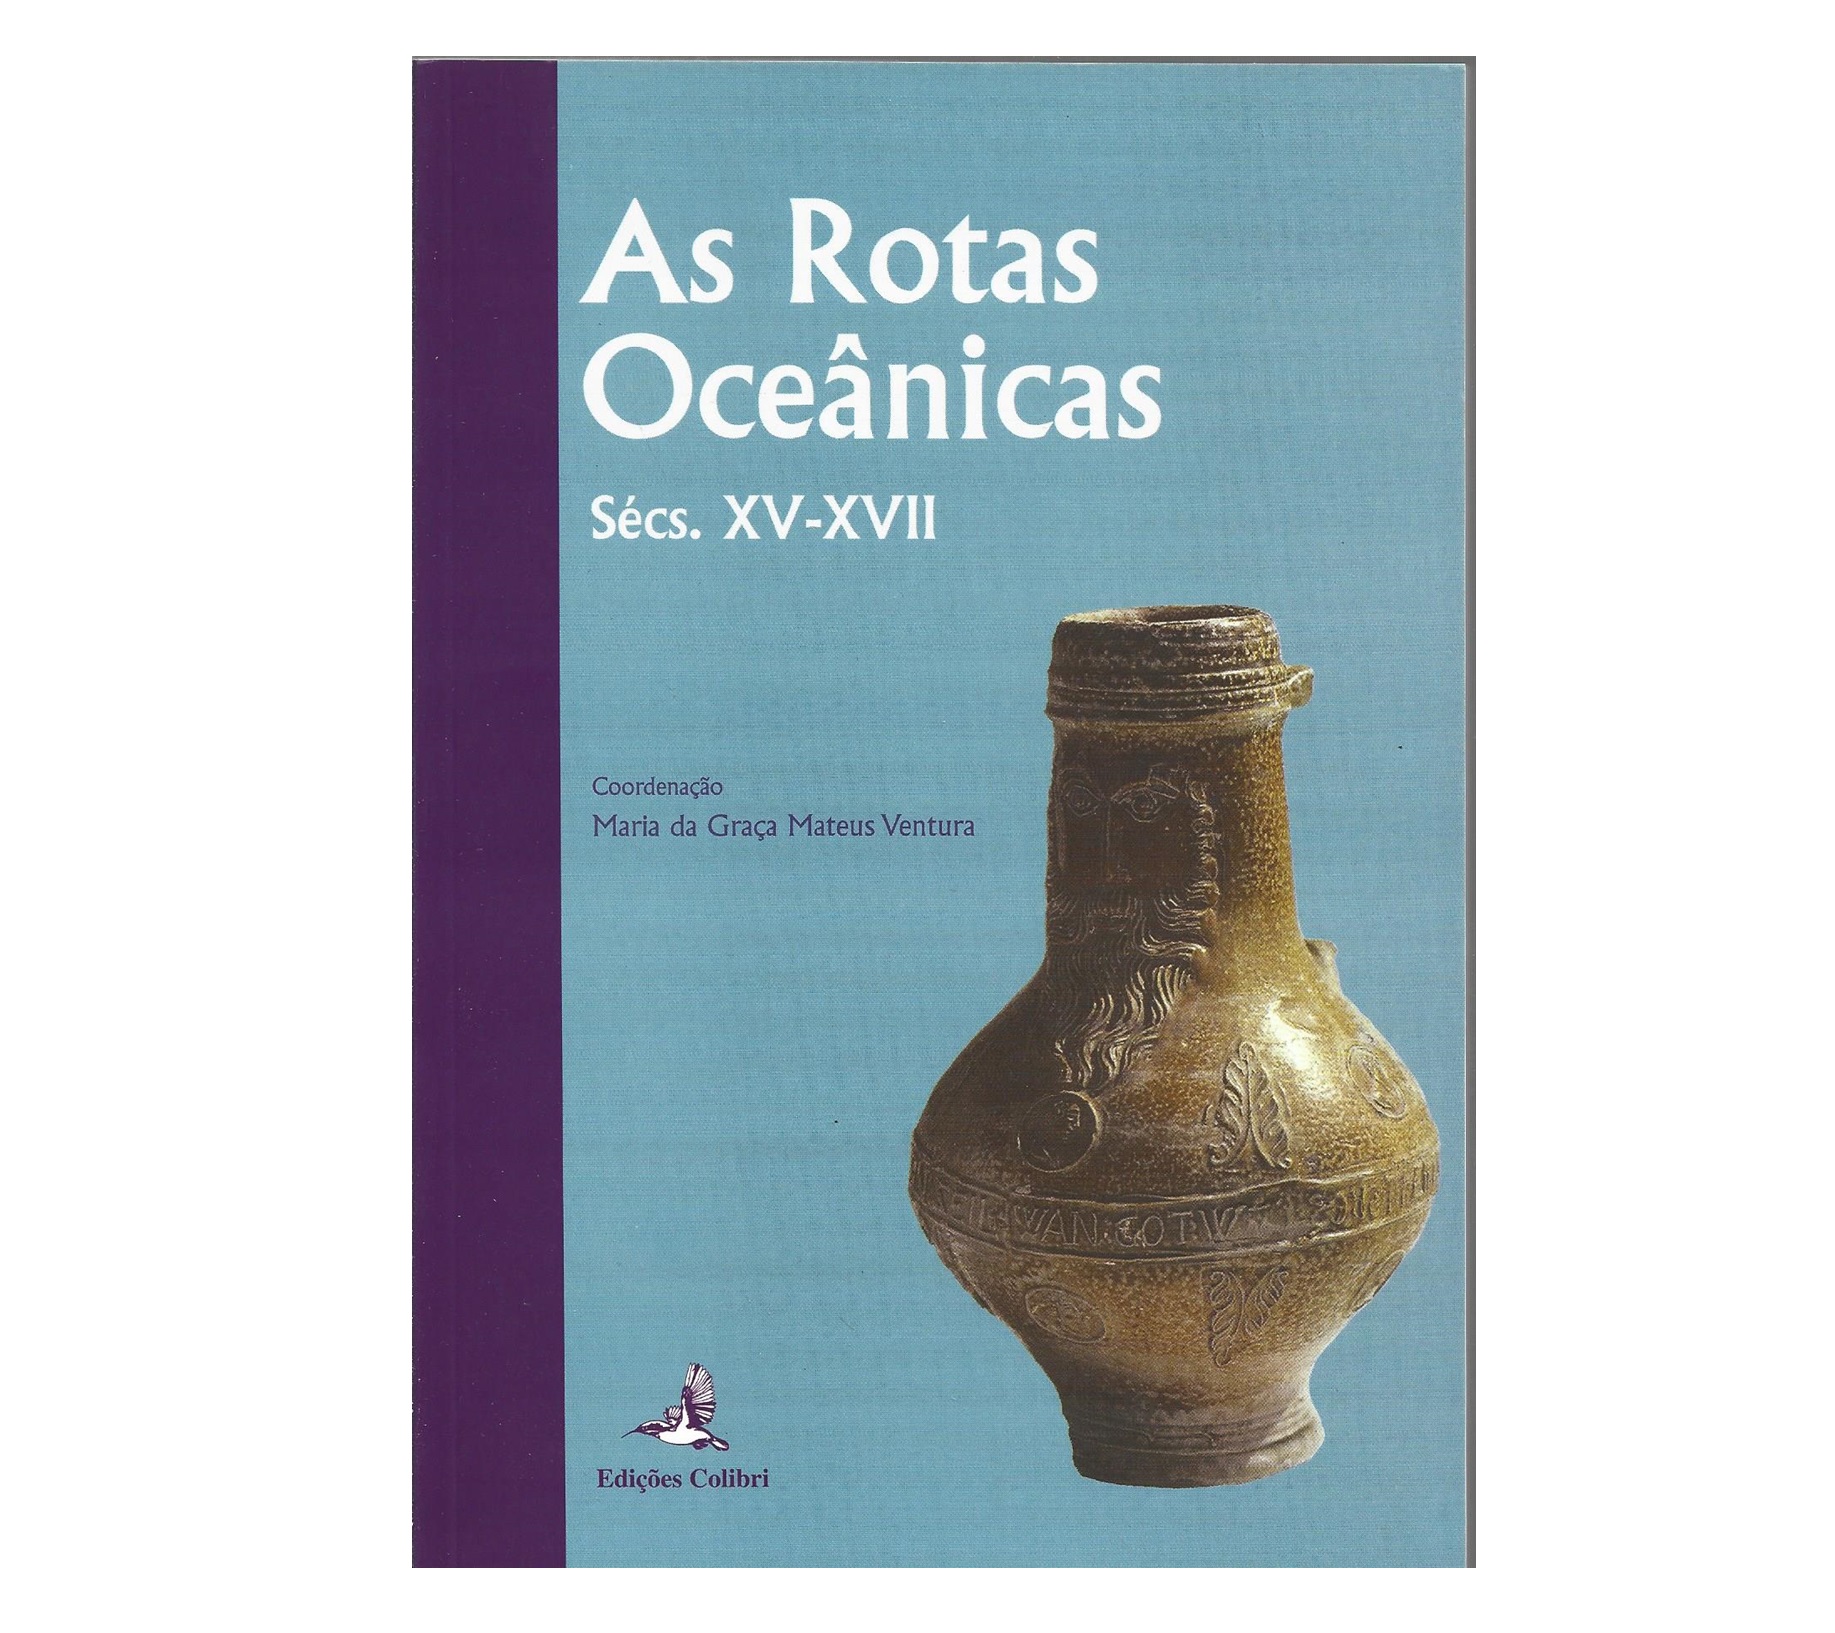 AS ROTAS OCEÂNICAS. SÉCS. XV-XVII